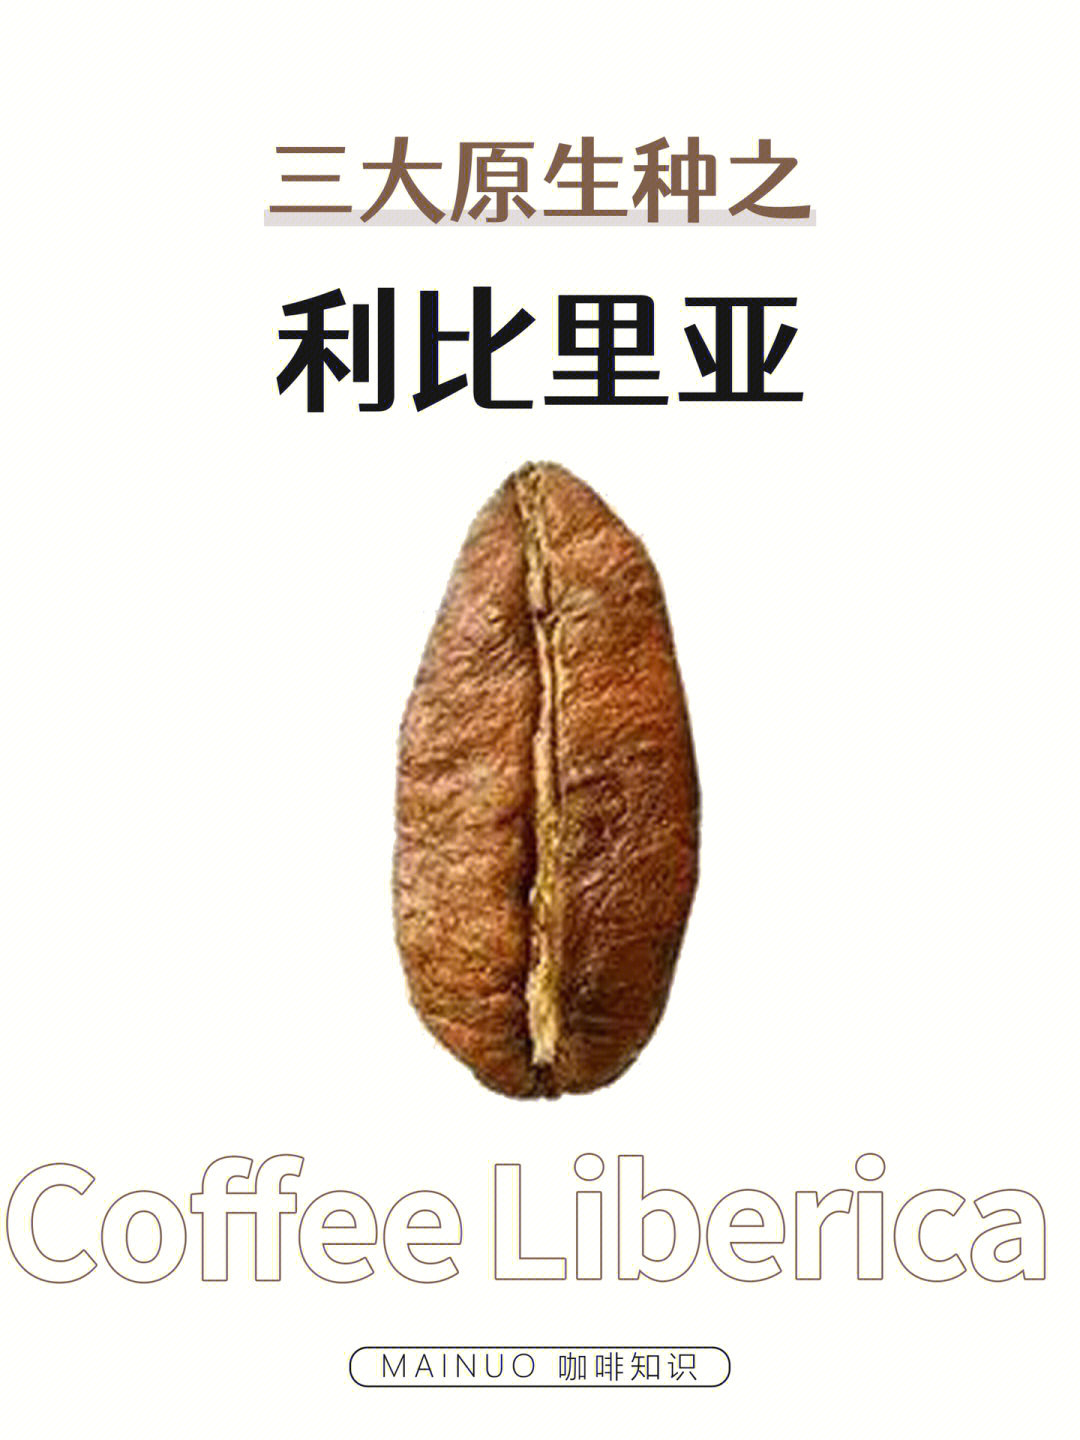 利比里亚咖啡图片